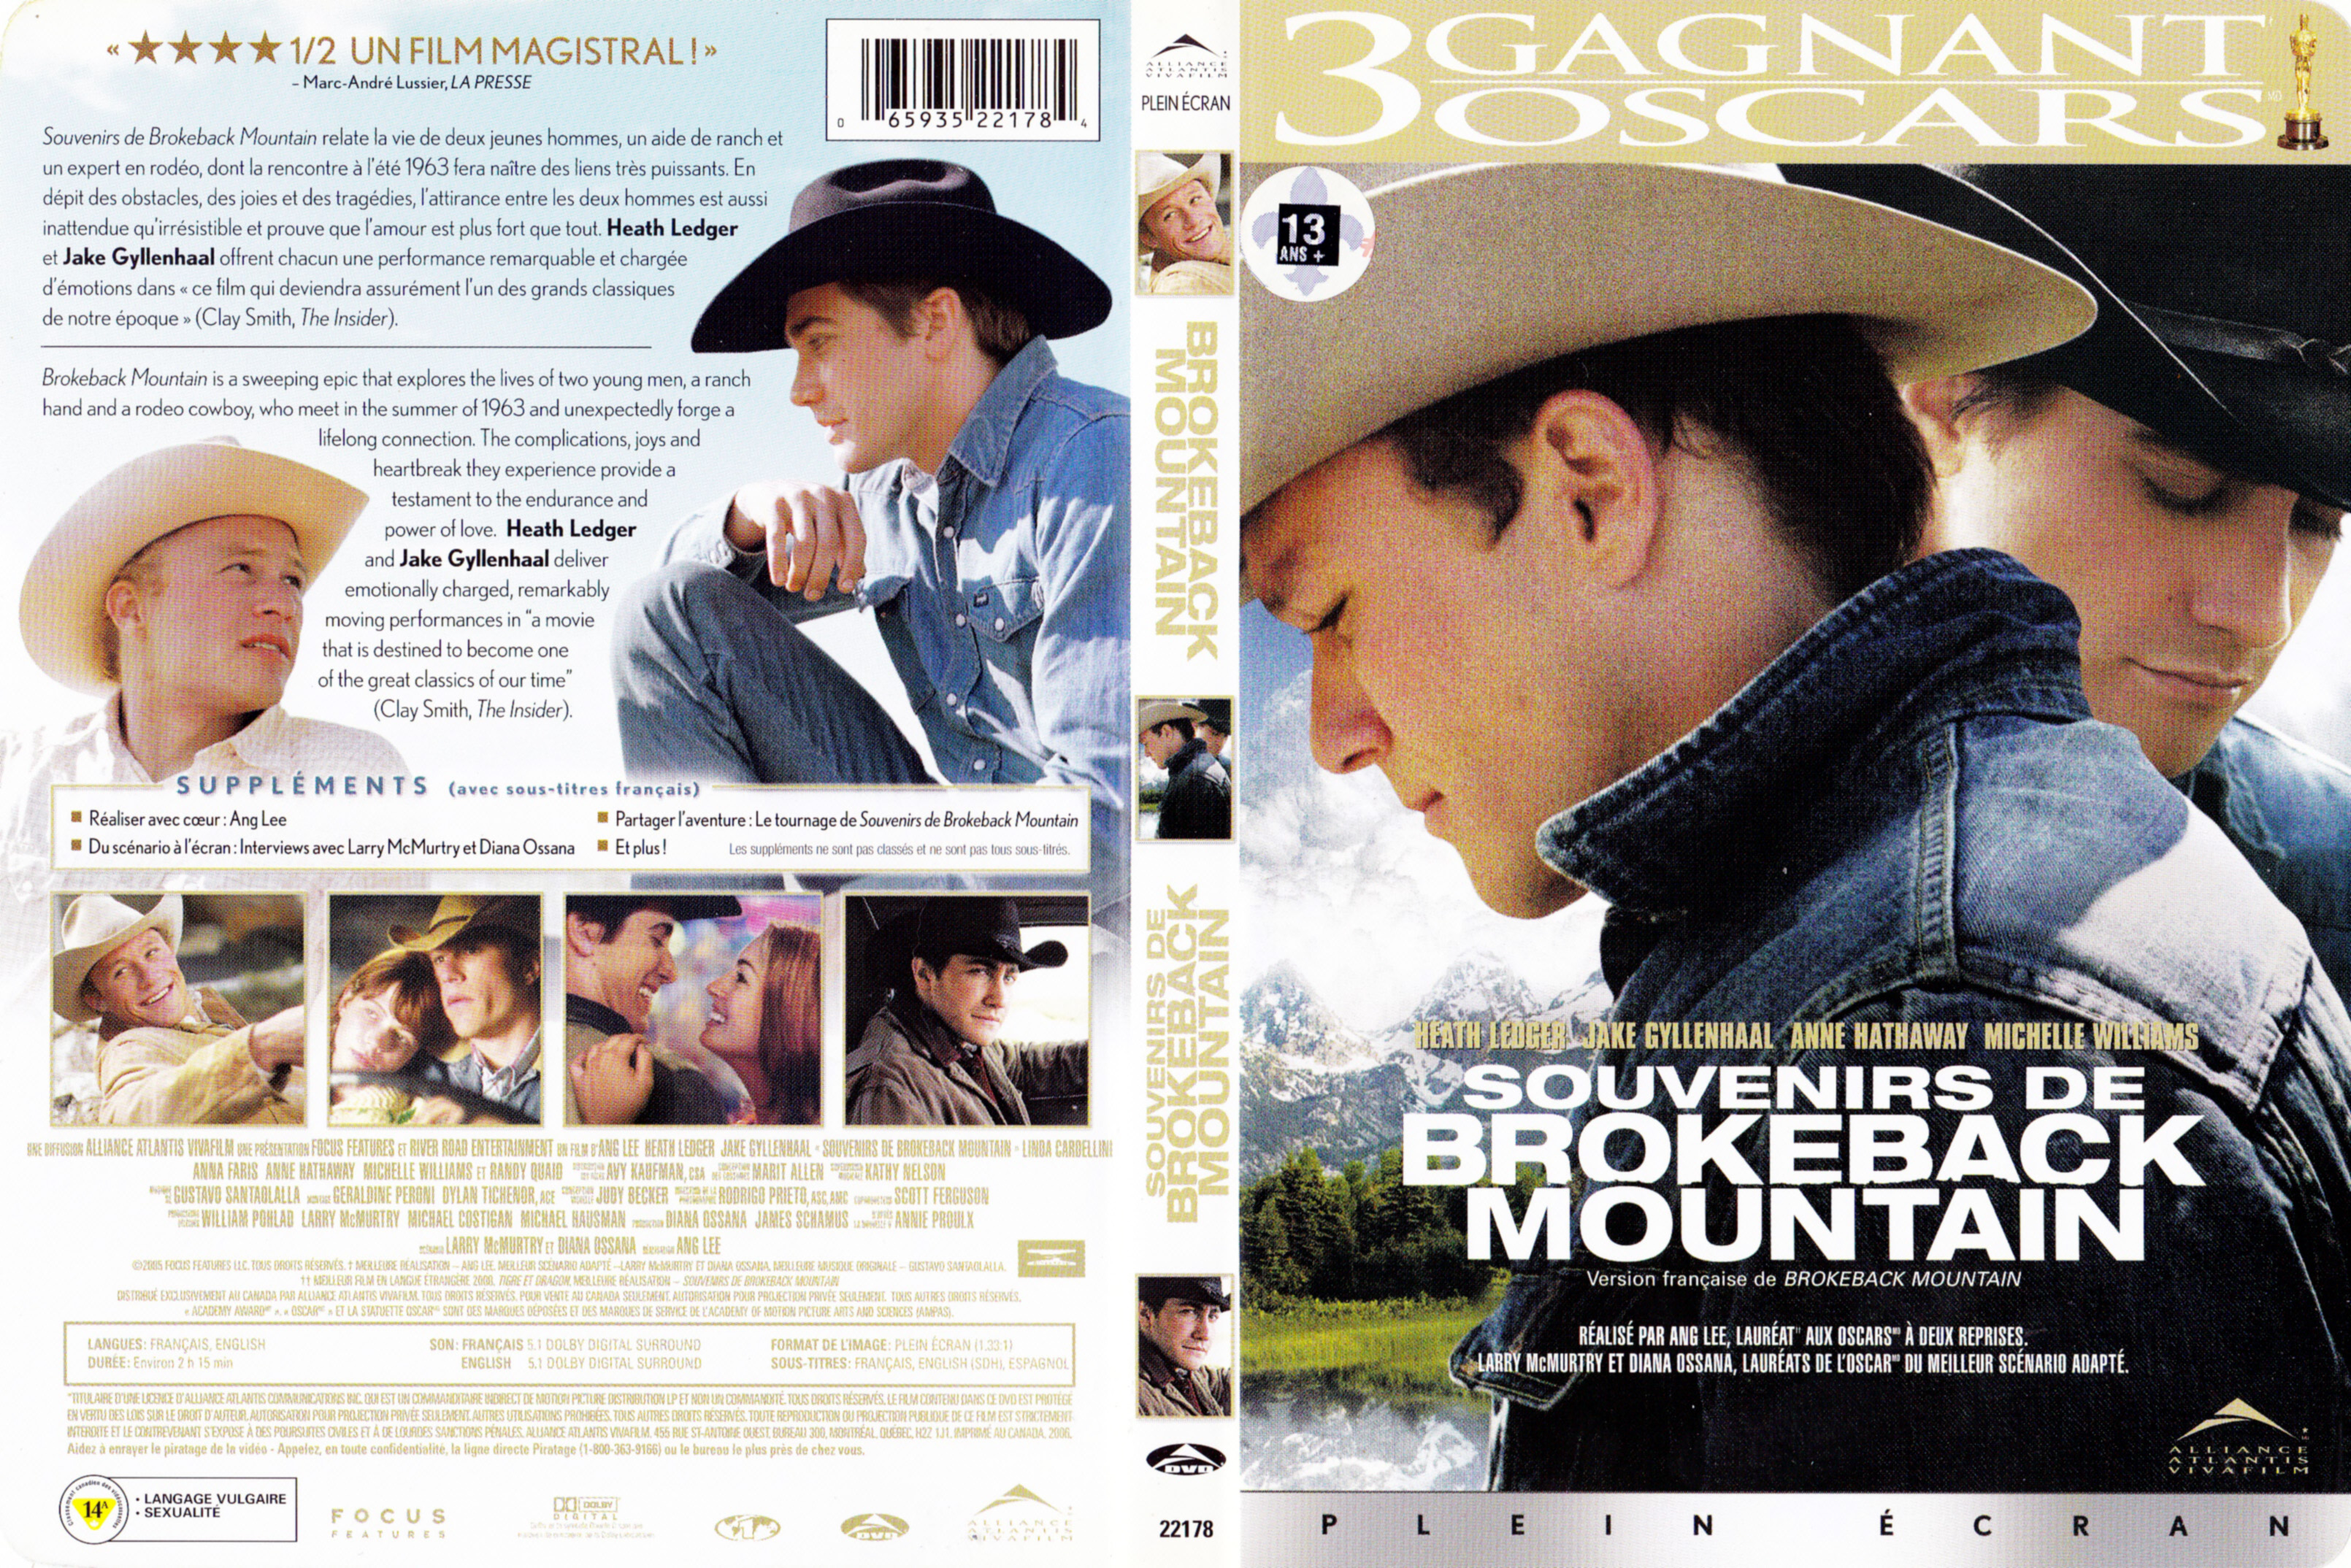 Jaquette DVD Souvenirs de Brokeback Mountain (Canadienne)